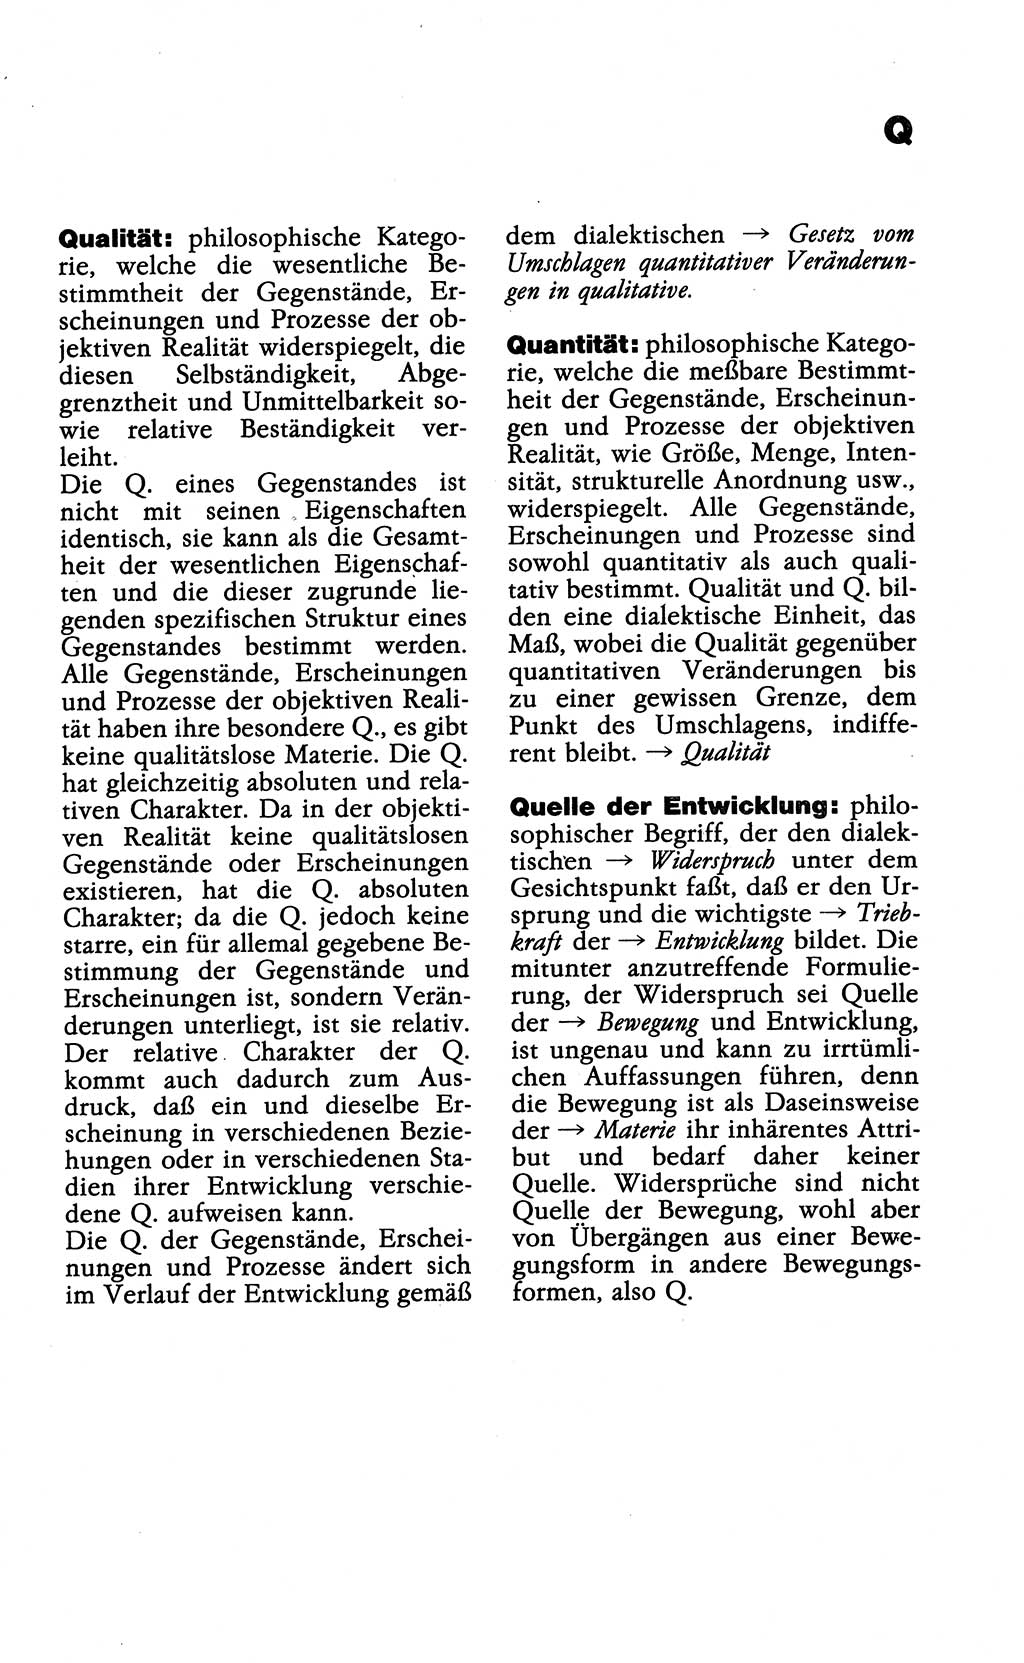 Wörterbuch der marxistisch-leninistischen Philosophie [Deutsche Demokratische Republik (DDR)] 1985, Seite 439 (Wb. ML Phil. DDR 1985, S. 439)